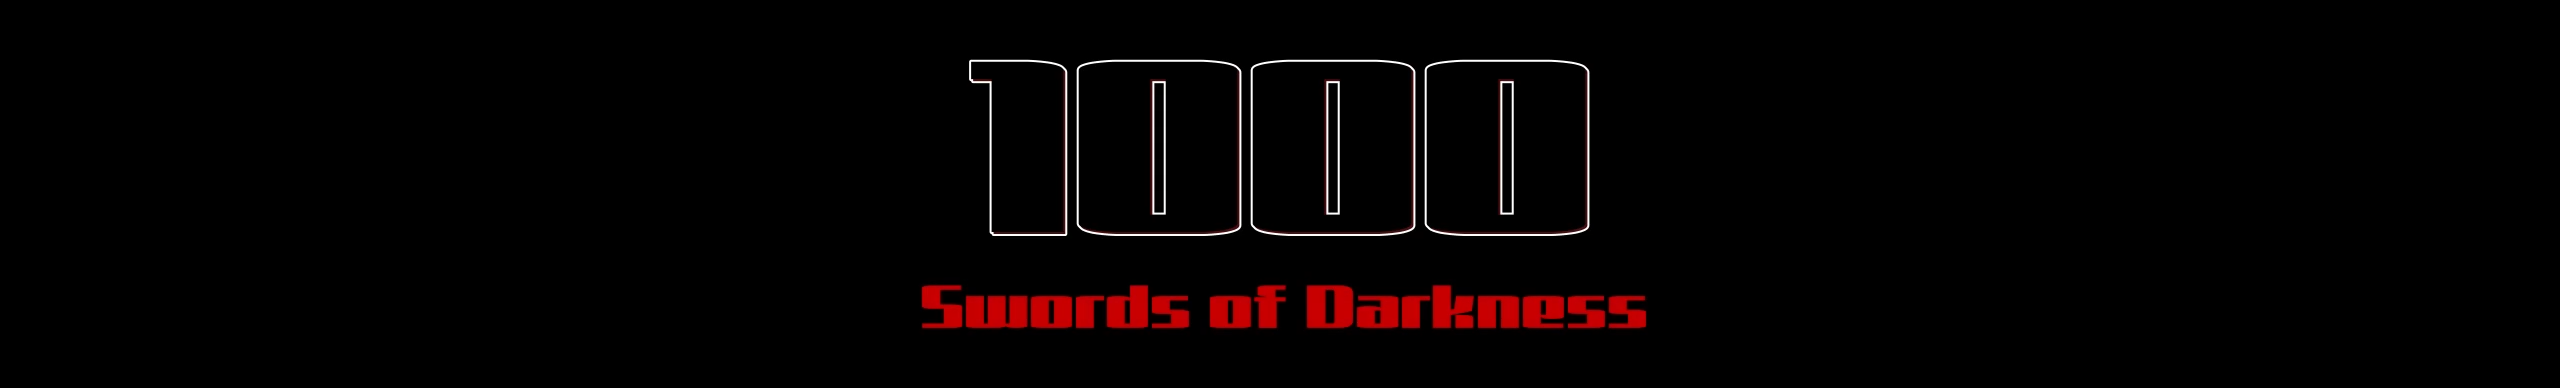 1000 Swords of Darkness